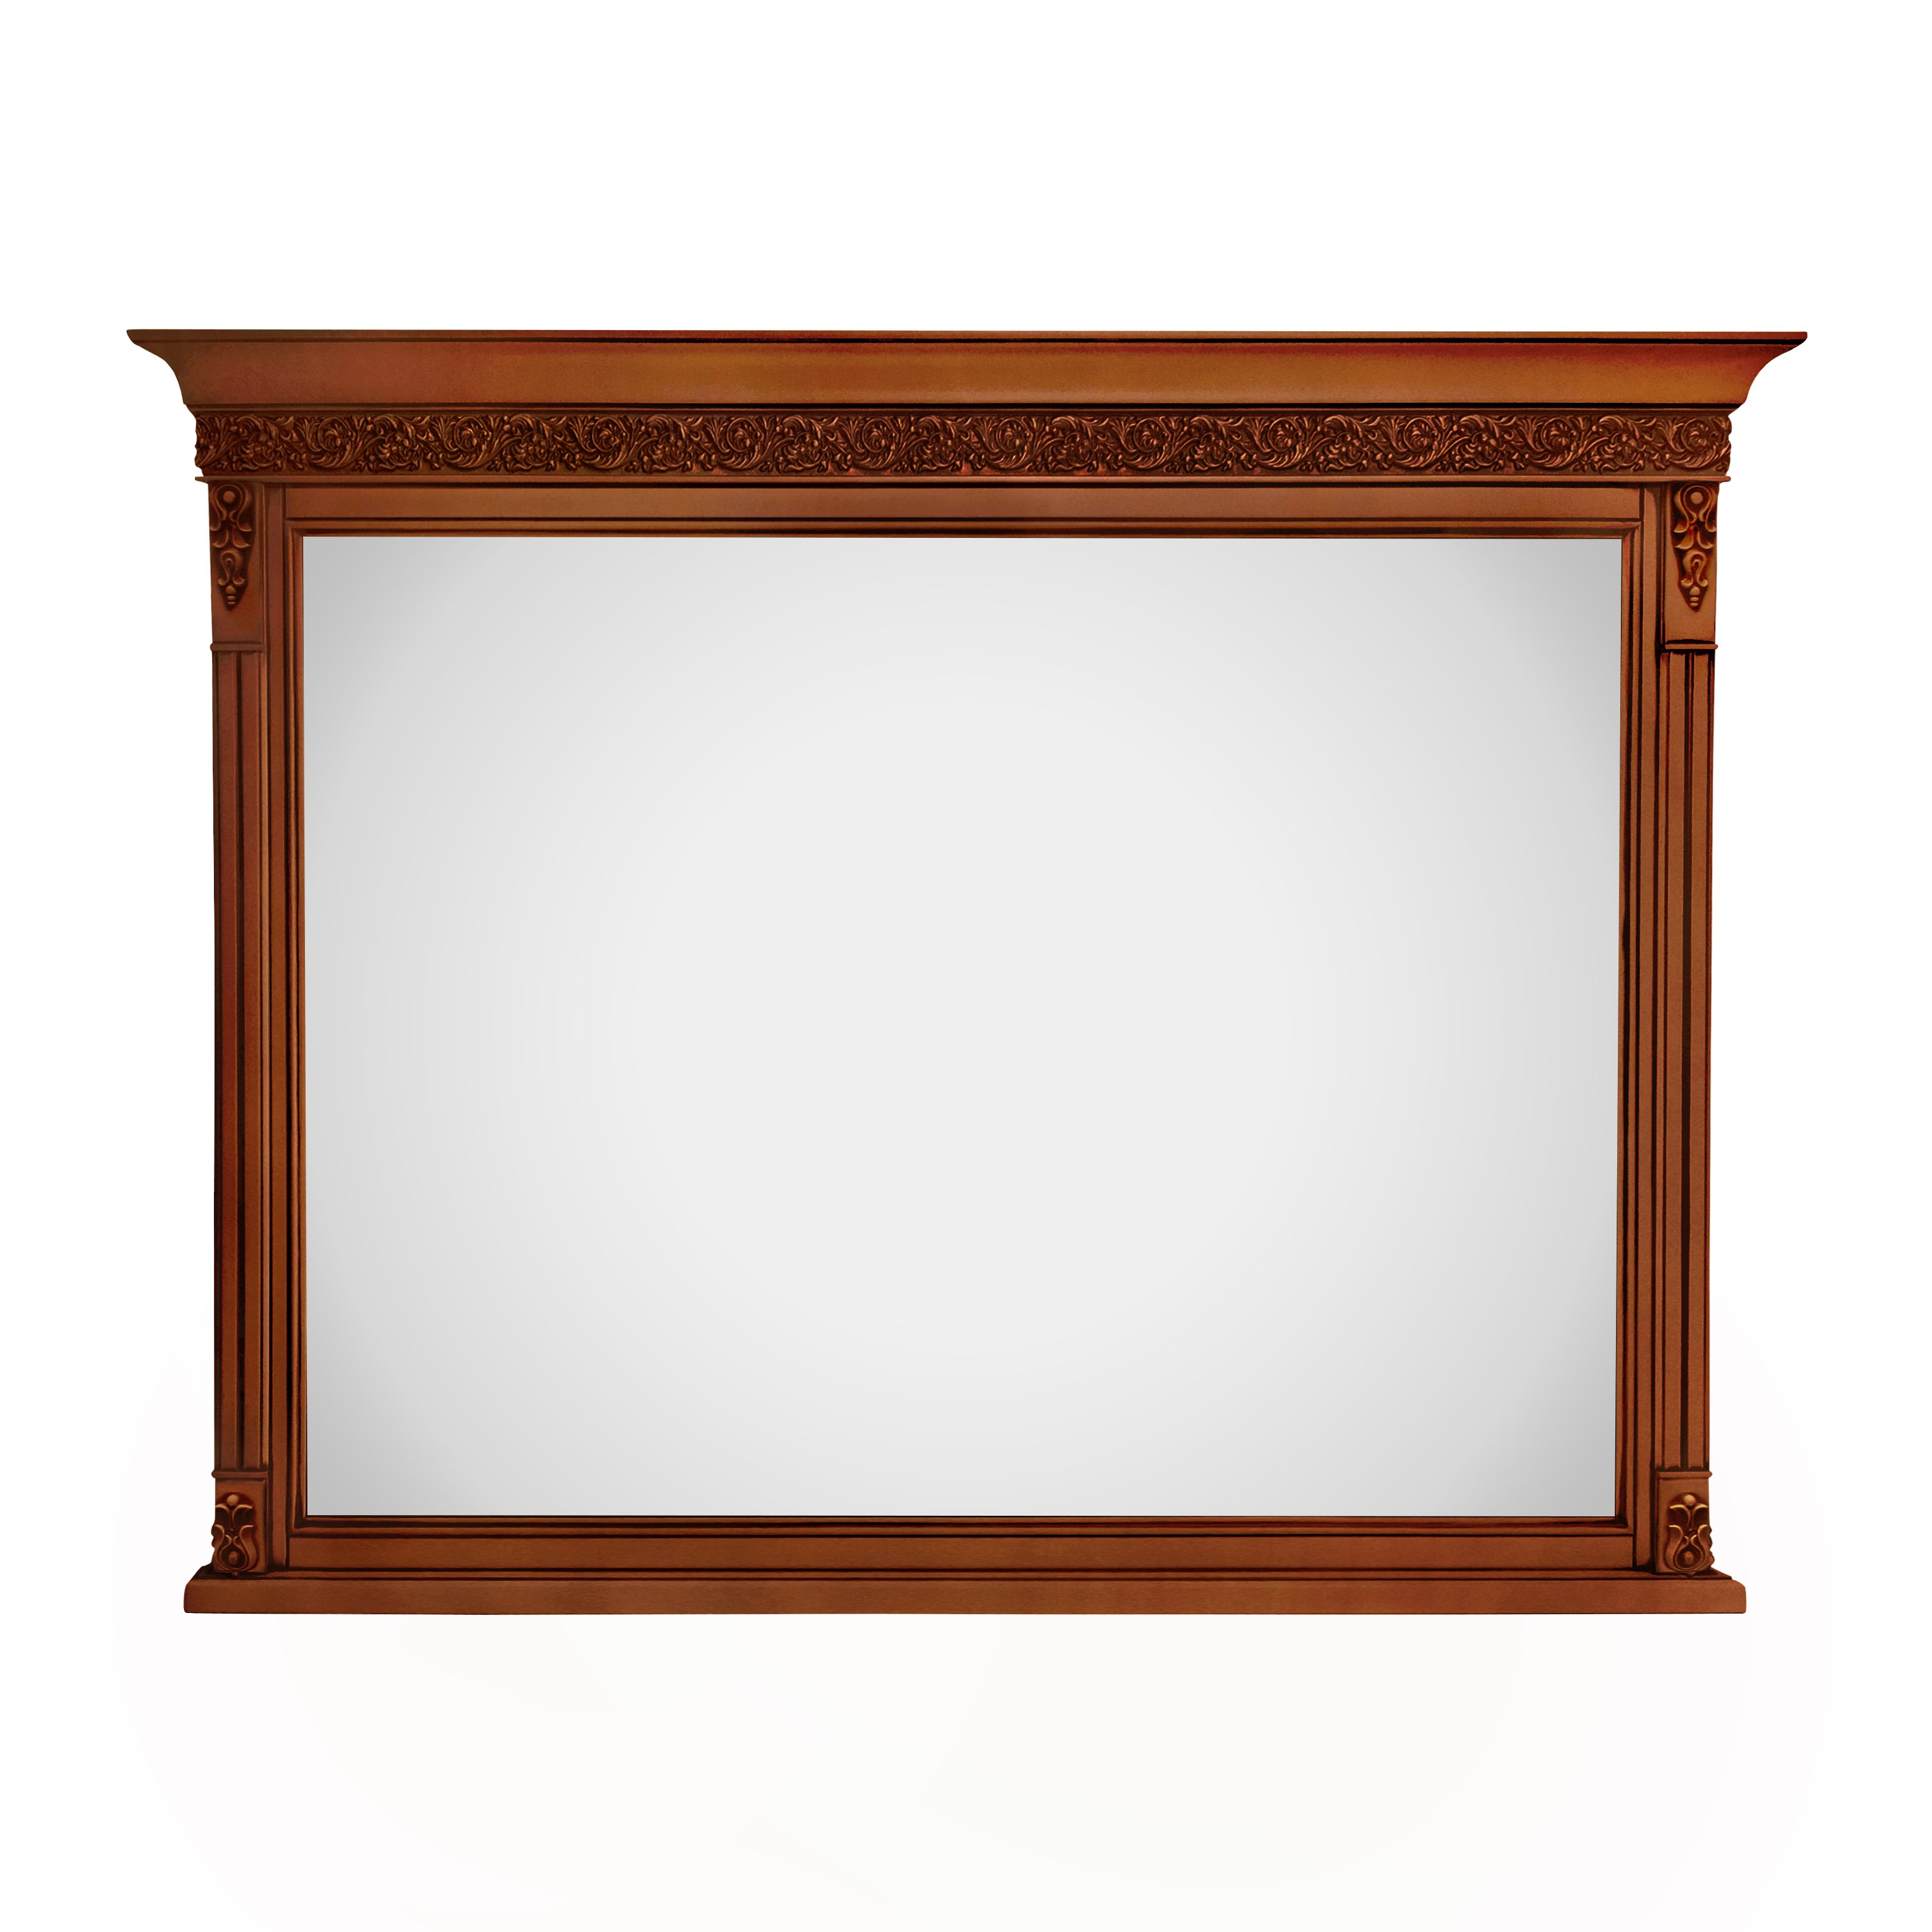 Зеркало Timber Неаполь Т-400, навесное цвет: янтарь (T-405)T-405